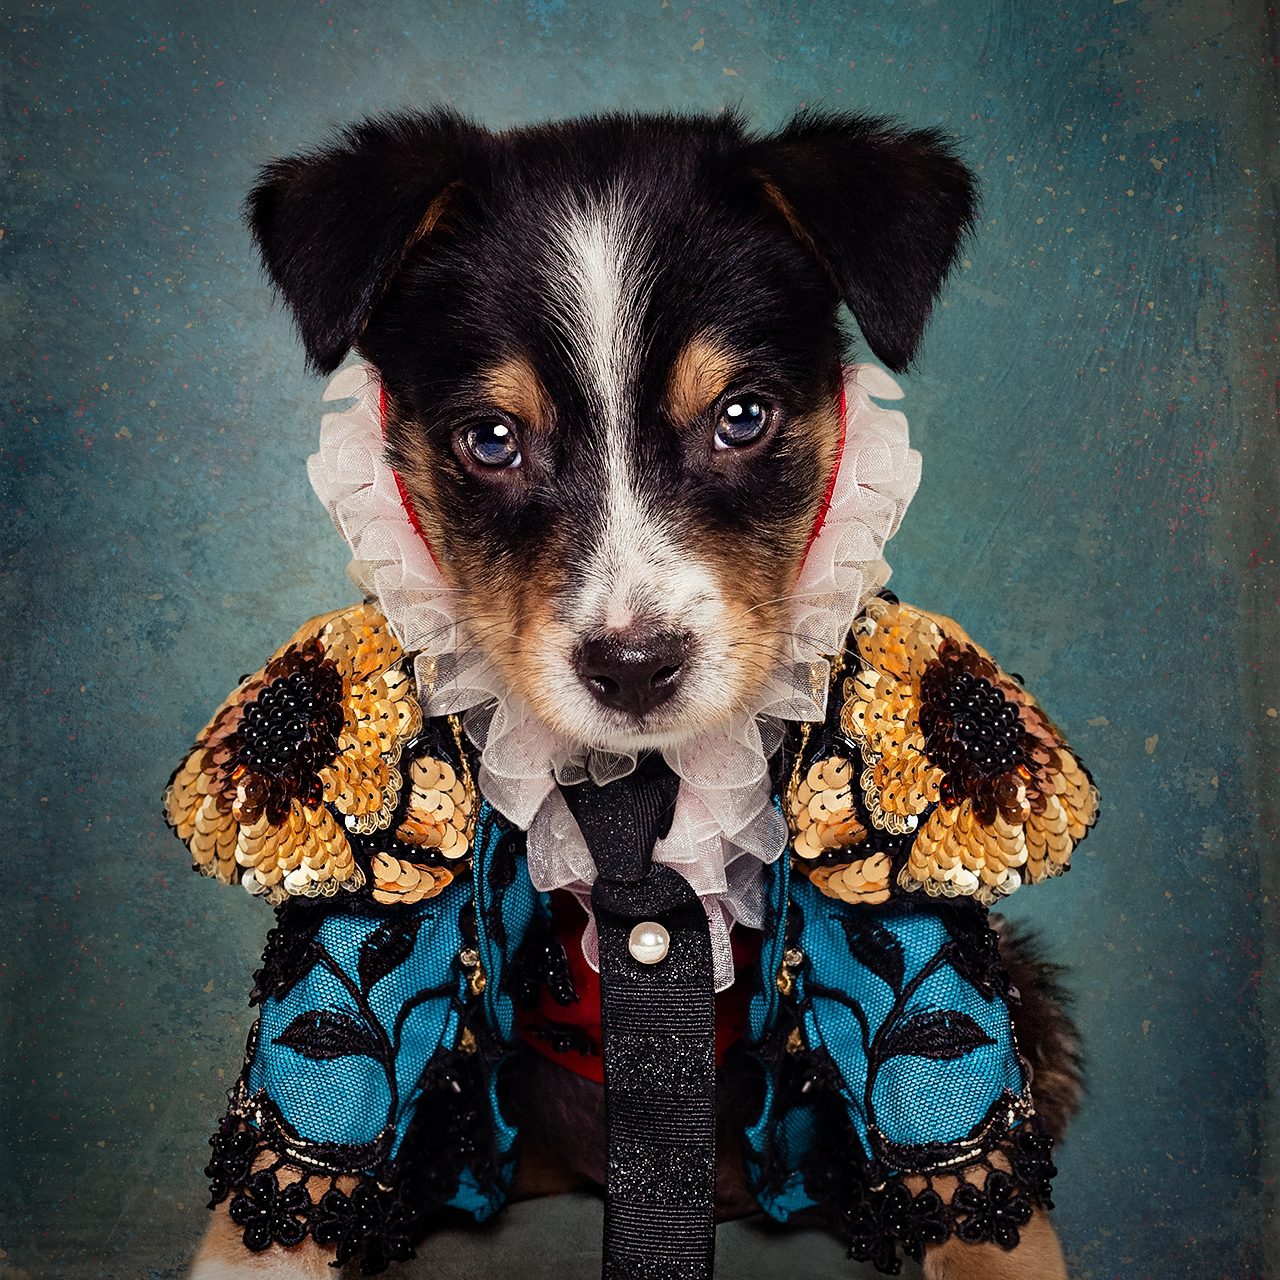 Anthony Rubio dog fashions during NYFW.